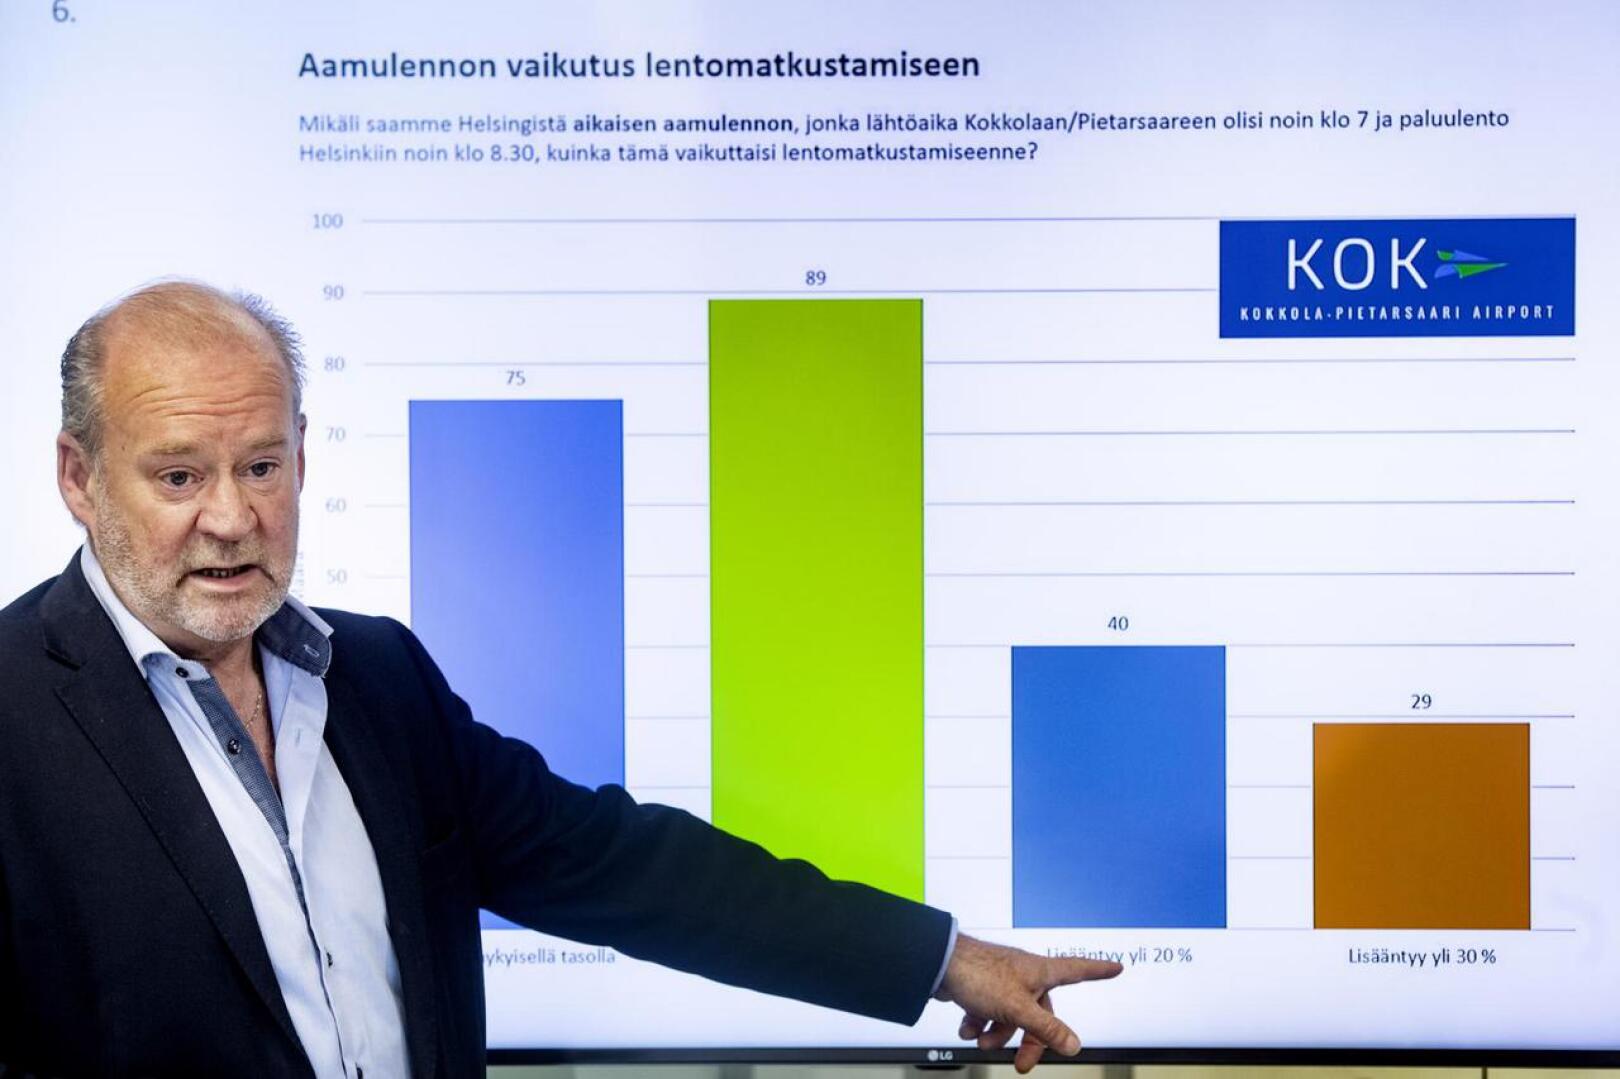 Kruunupyyn lentohalliyhtiön toimitusjohtaja Stig-Göran Forsman esittelee selvitystä, jonka mukaan yritykset ovat kärsineet aamulennon puuttumisesta.